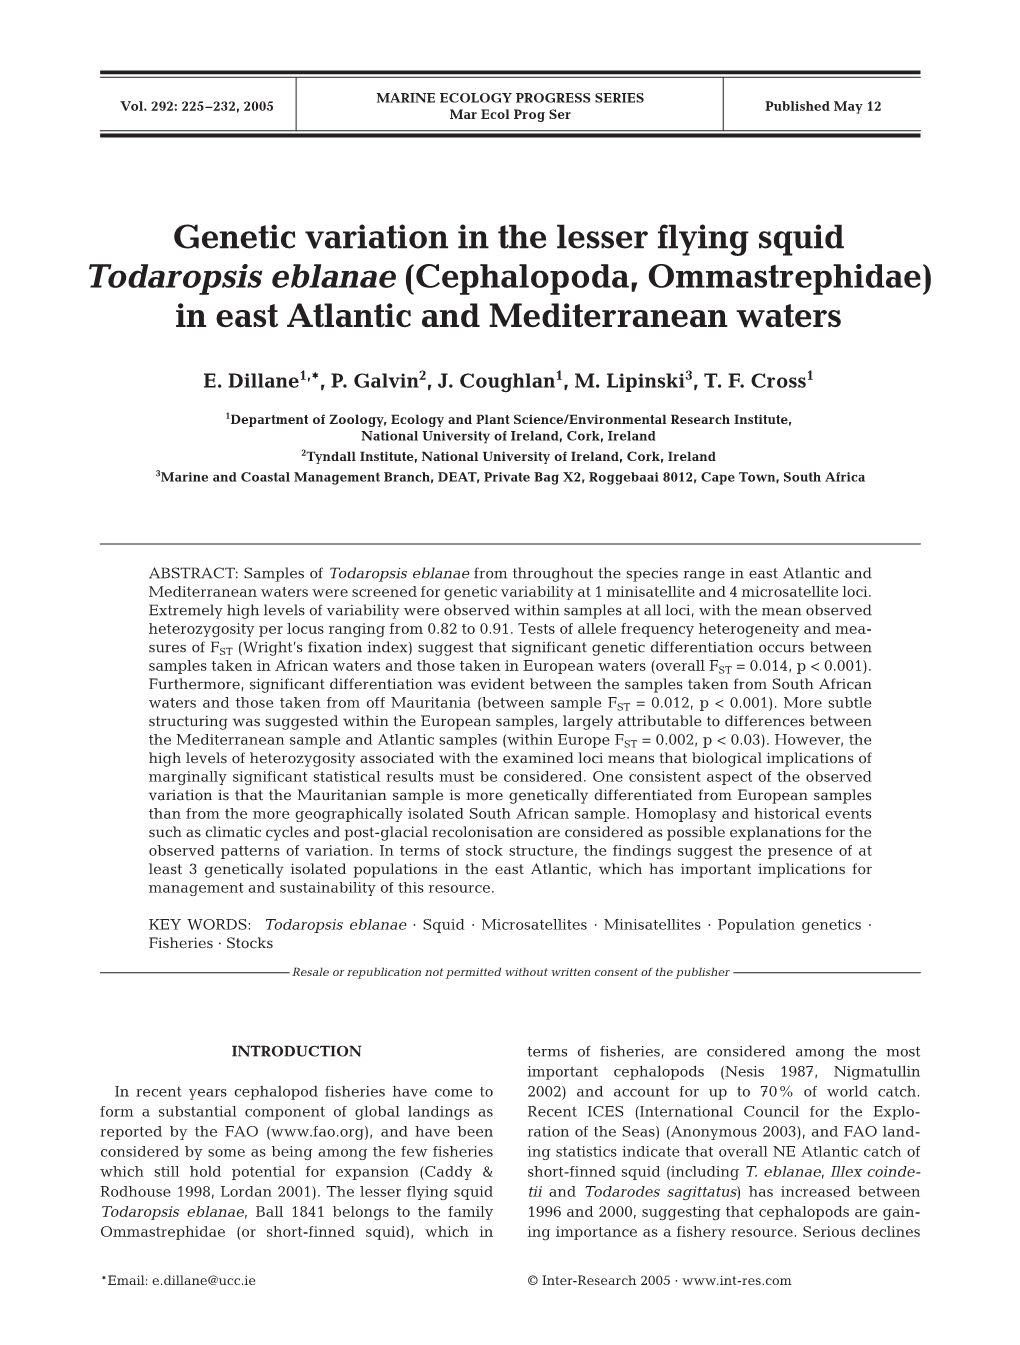 Genetic Variation in the Lesser Flying Squid Todaropsis Eblanae (Cephalopoda, Ommastrephidae) in East Atlantic and Mediterranean Waters